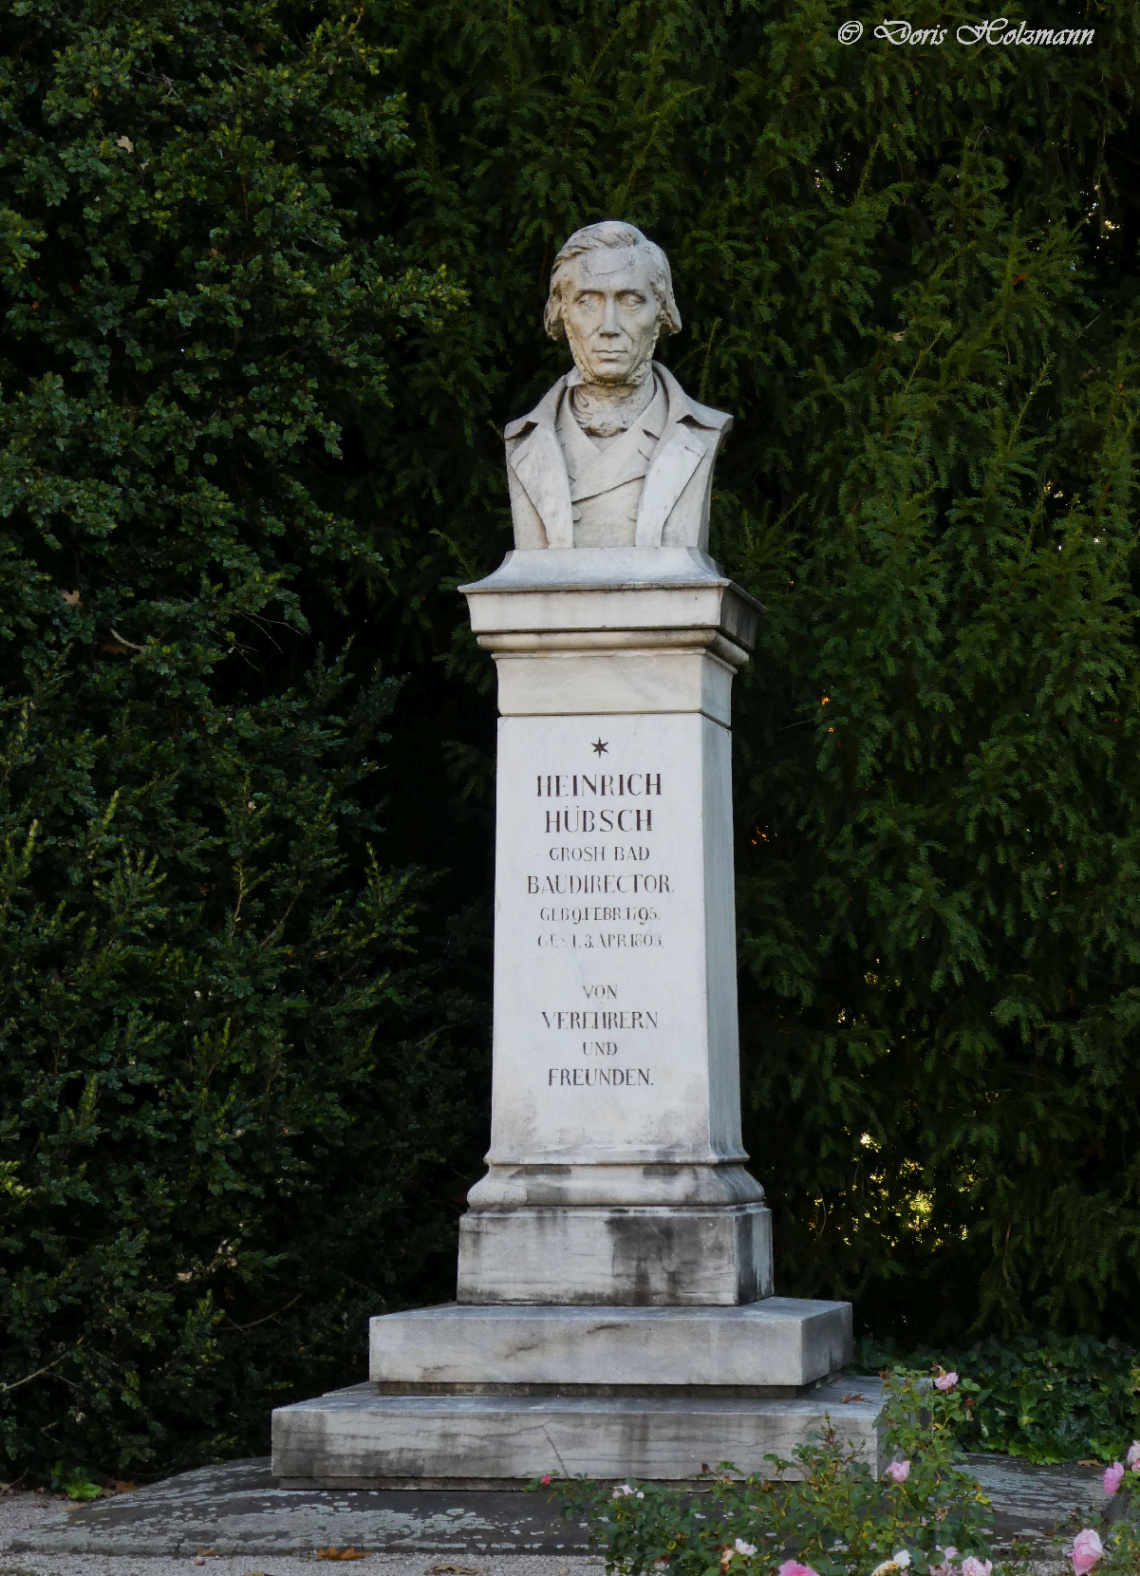 Monument of Heinrich Hübsch